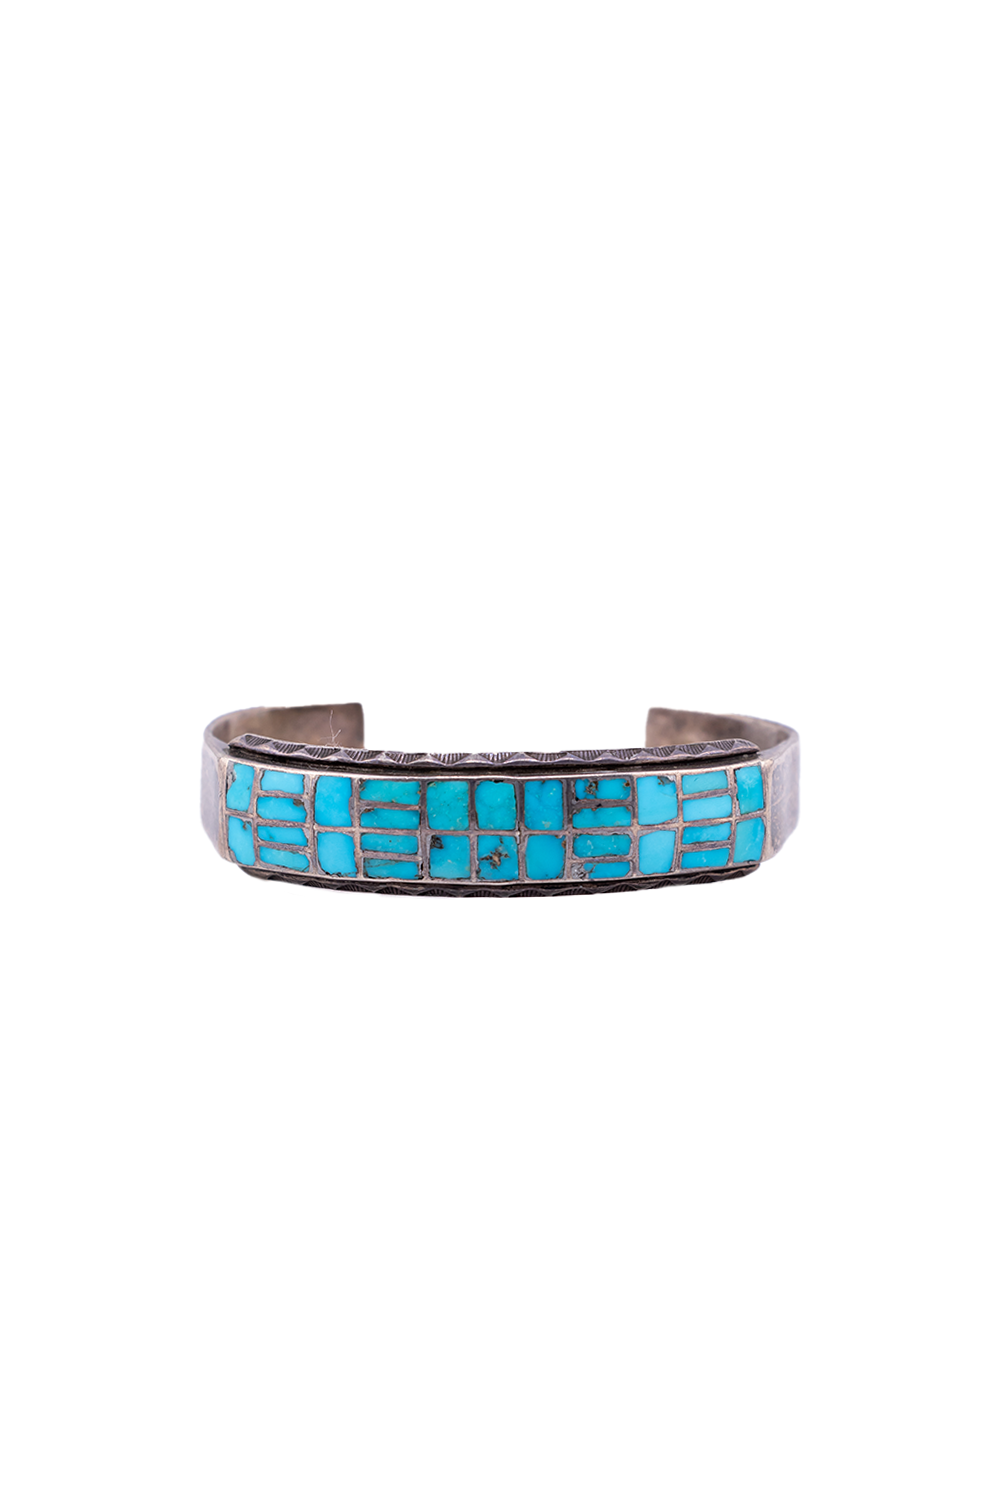 Old Zuni Inland Turquoise Bracelet